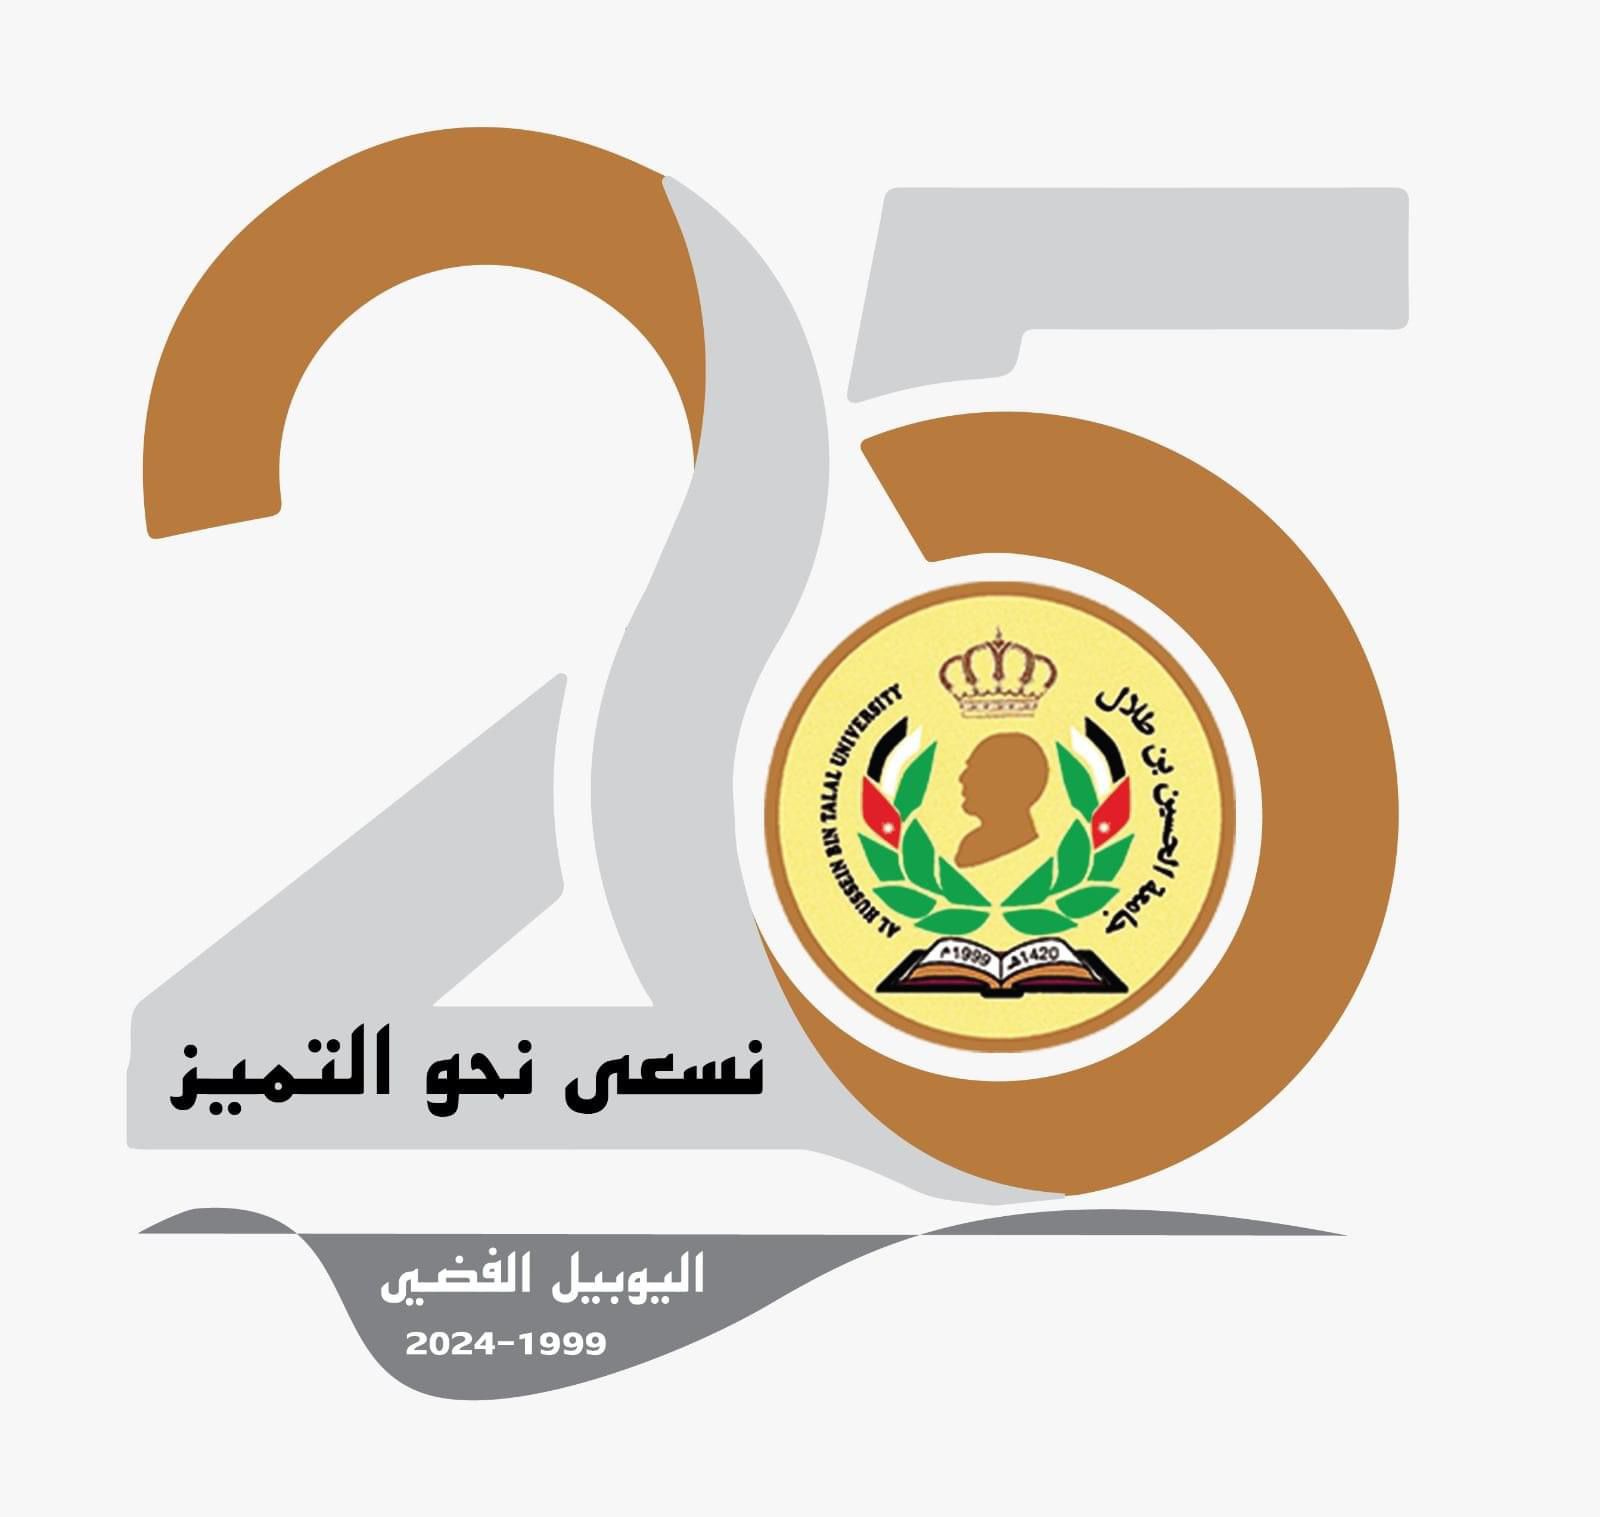 اليوبيل الفضي للجامعة الحسين بن طلال: 25 عامًا من الإبداع والتميز